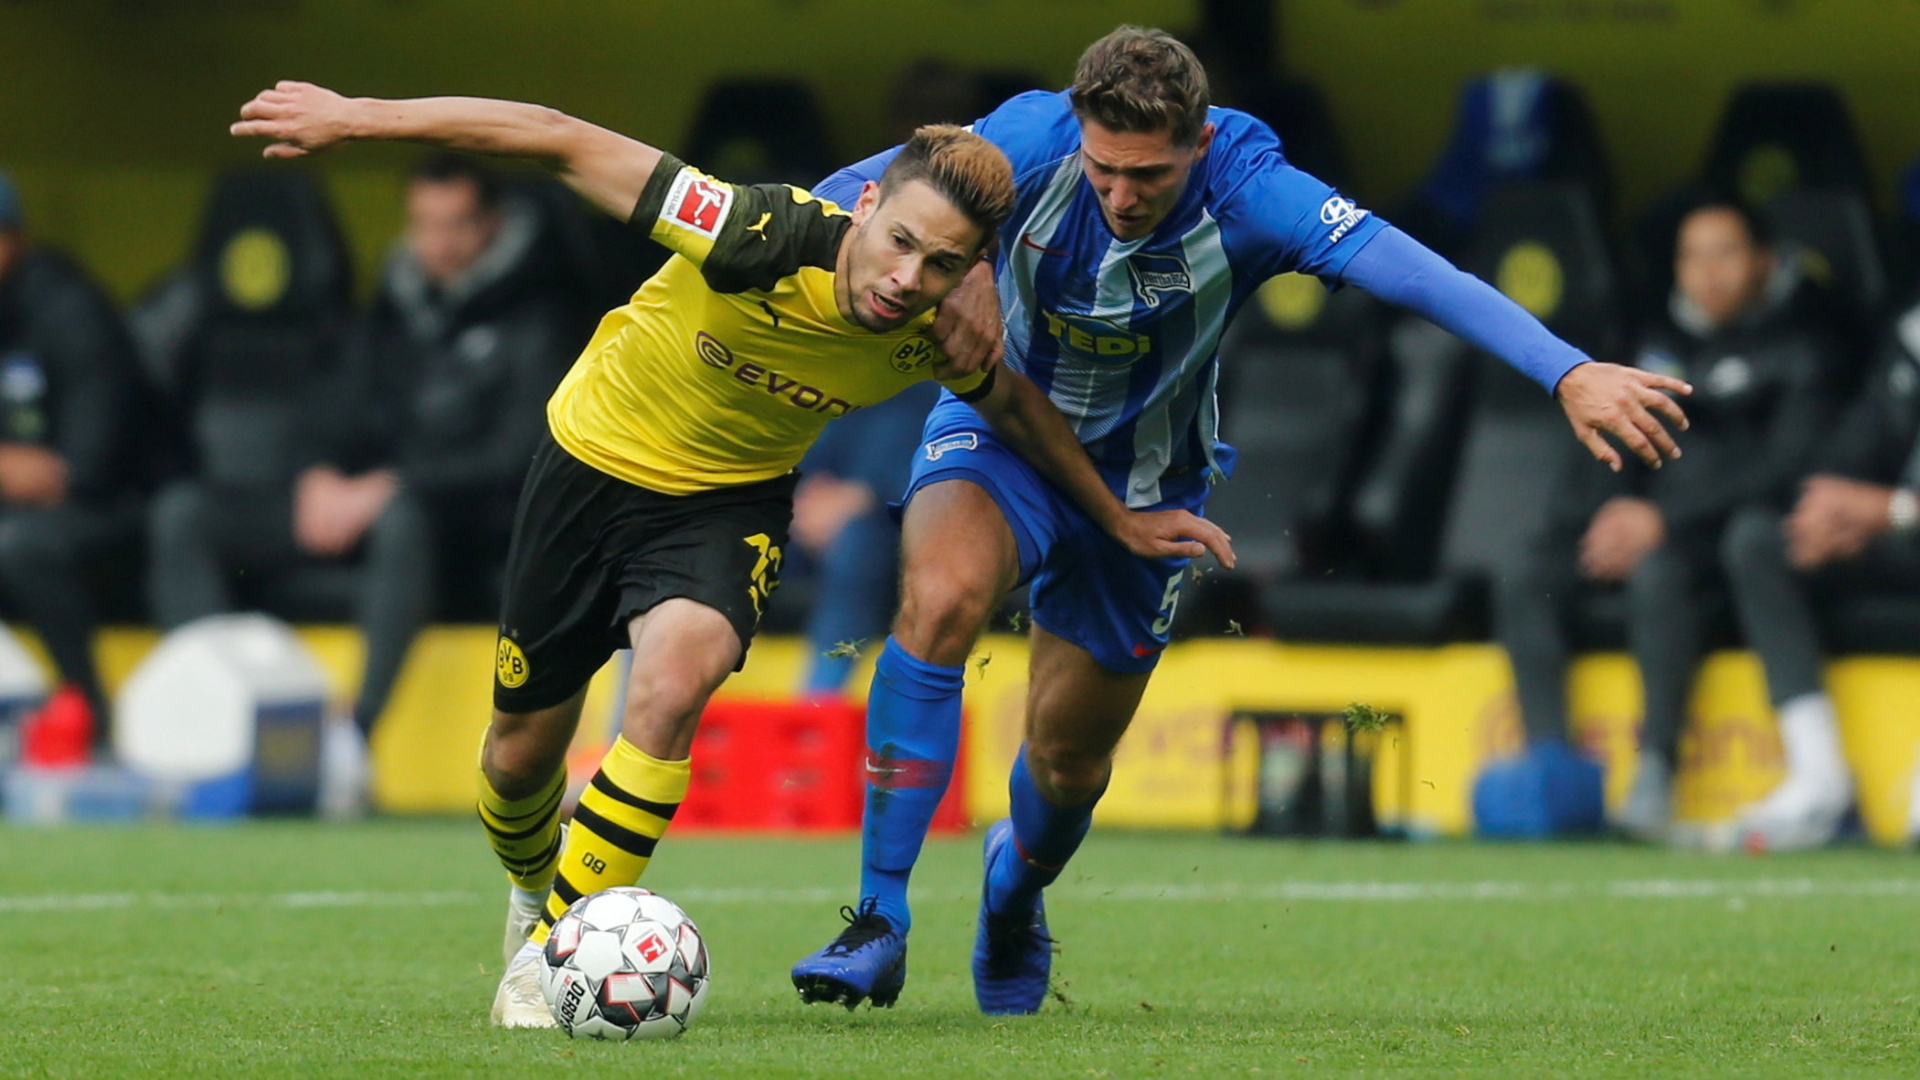 Raphael Guerreiro vom BVB kämpft mit Niklas Stark vom Hertha BSC um den Ball. | Bildquelle: REUTERS